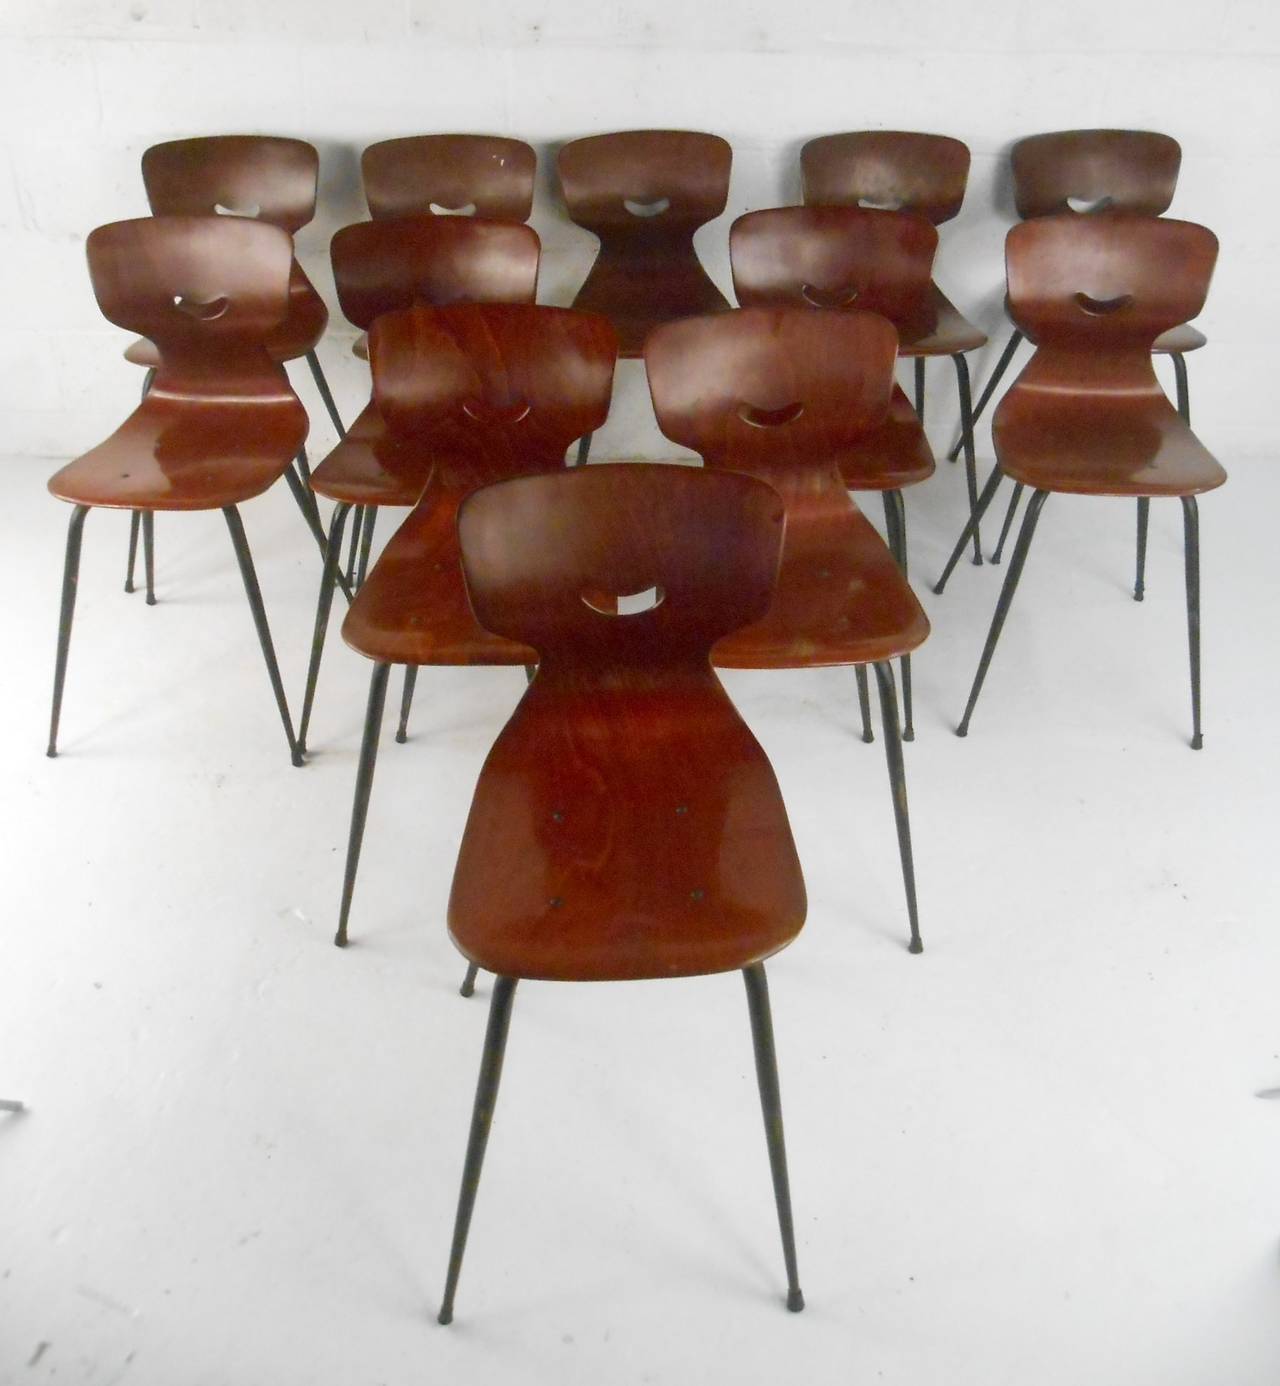 Schöne geformte Stühle in Industriestärke, entworfen von Adam Stegner. Hergestellt aus robusten Pagholz-Formsitzen (Pagholz ist ein hochverdichtetes, laminiertes Pressholz mit orthopädischer Becken- und Rückenstütze ohne Verstellung), die auf